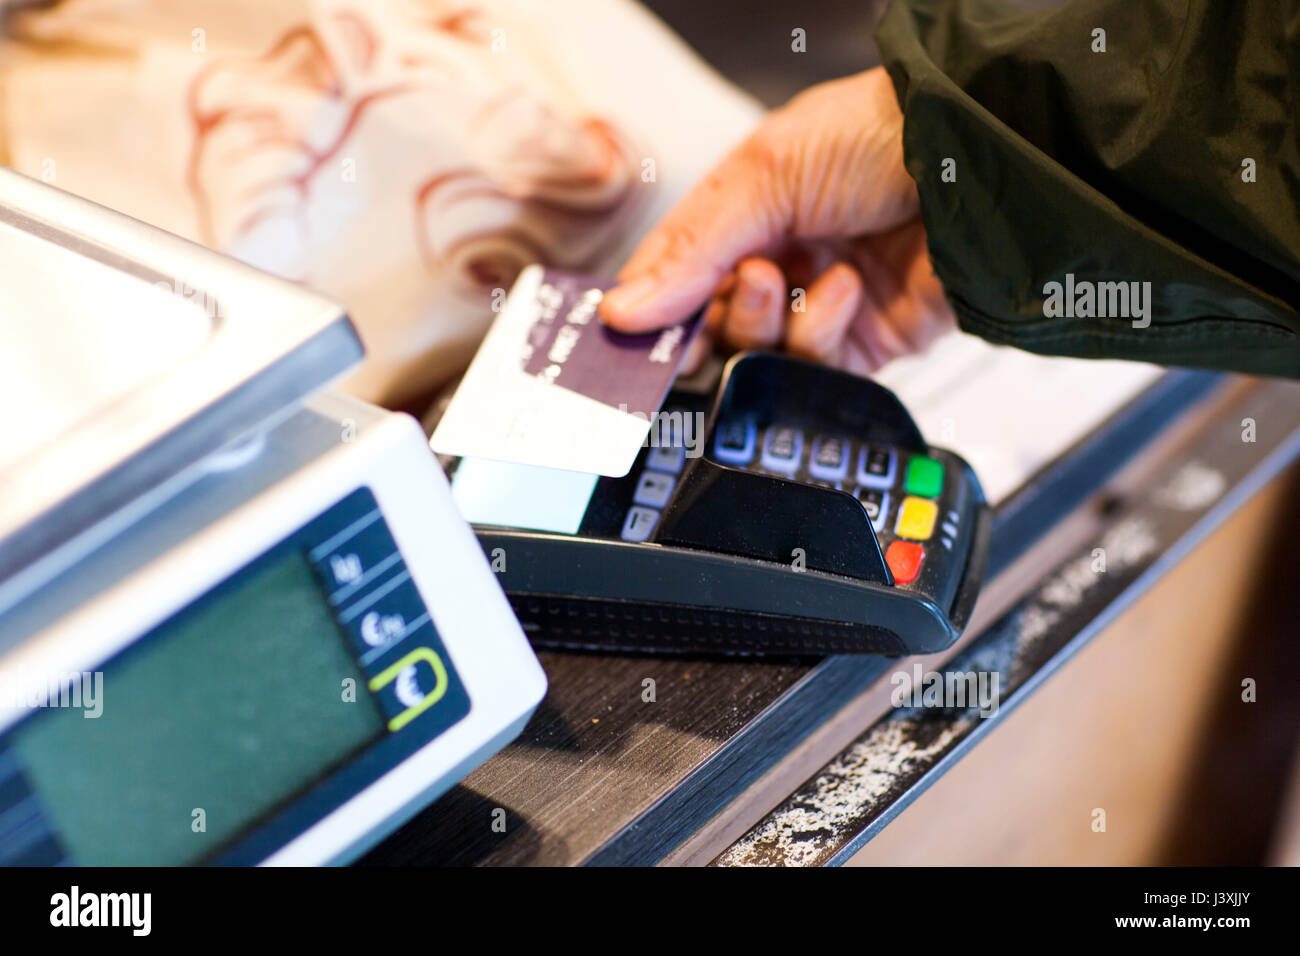 Blick auf Frau mit einem kontaktlosen Bezahlung Kreditkarte Maschine 7/8 Stockfoto